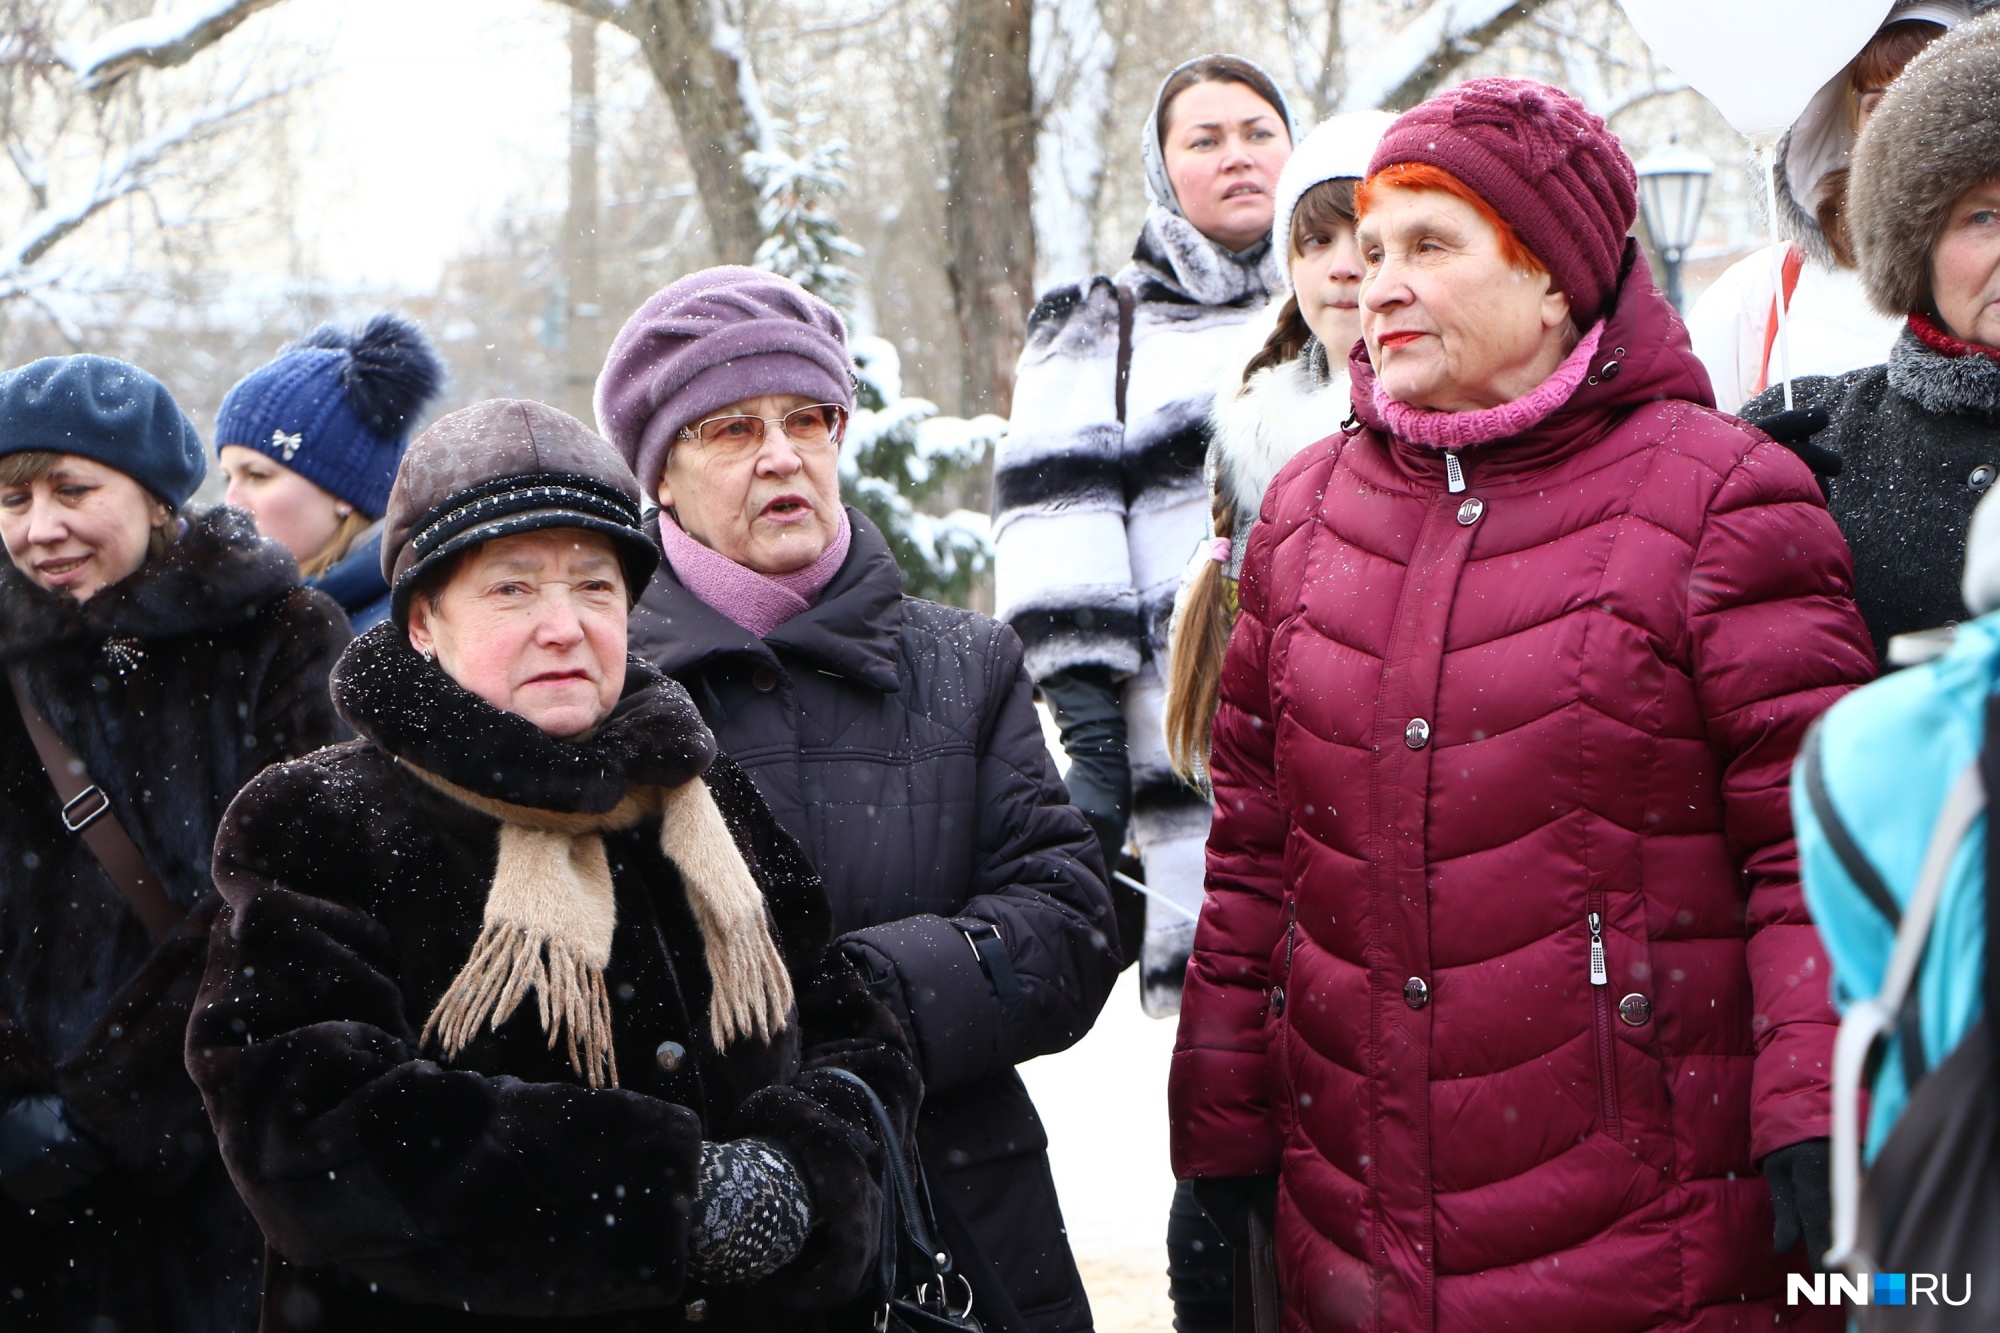 Бесплатные юридические консультации для всех желающих начались в Нижнем Новгороде